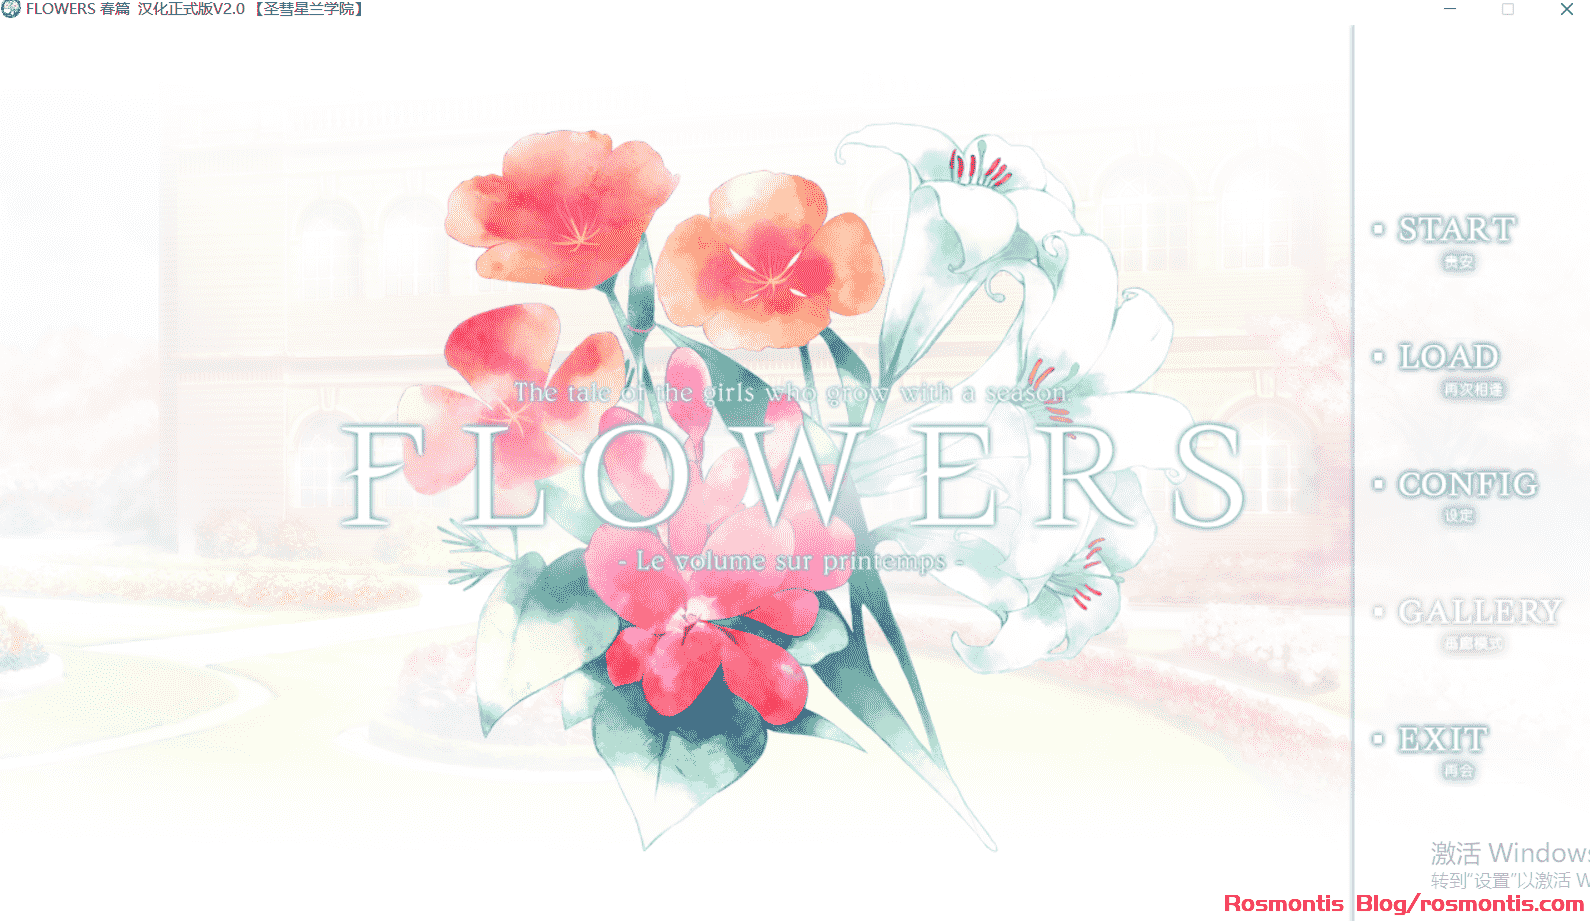 FLOWERS系列】FLOWERS春篇FLOWERS -Le volume sur printemps- 完整汉化